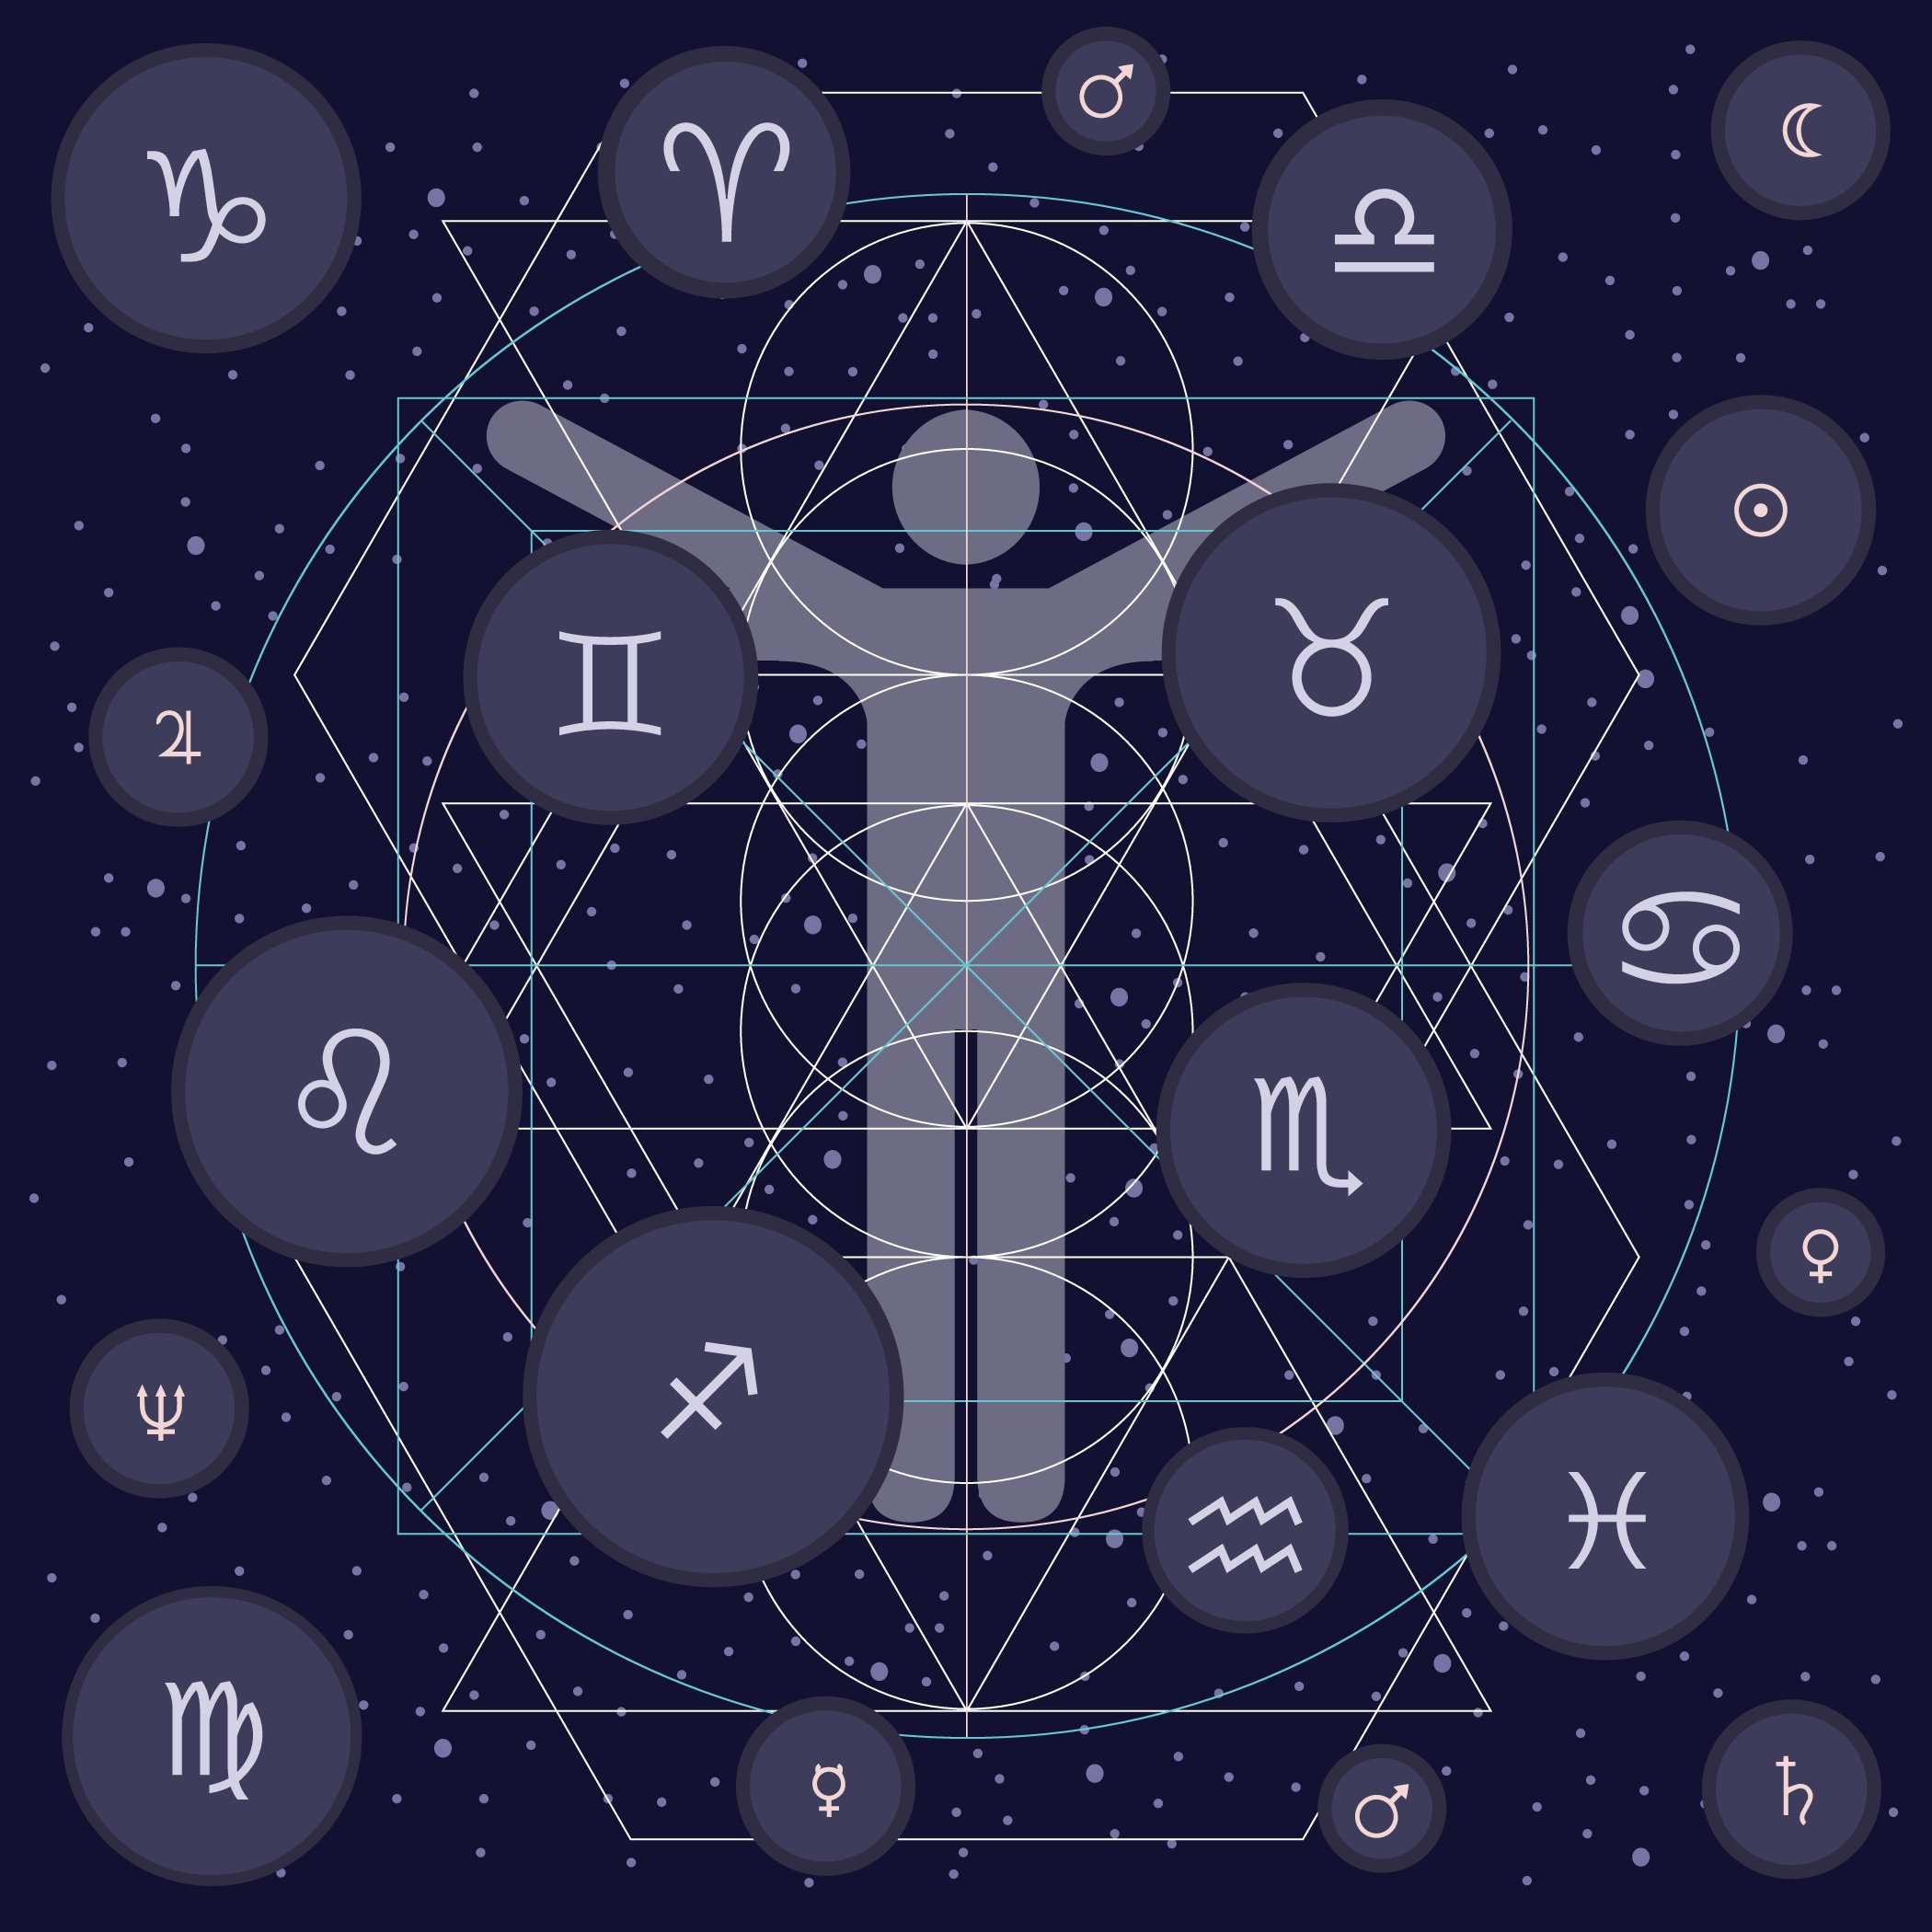 Salud entre los signos del zodíaco || Fuente: Shutterstock